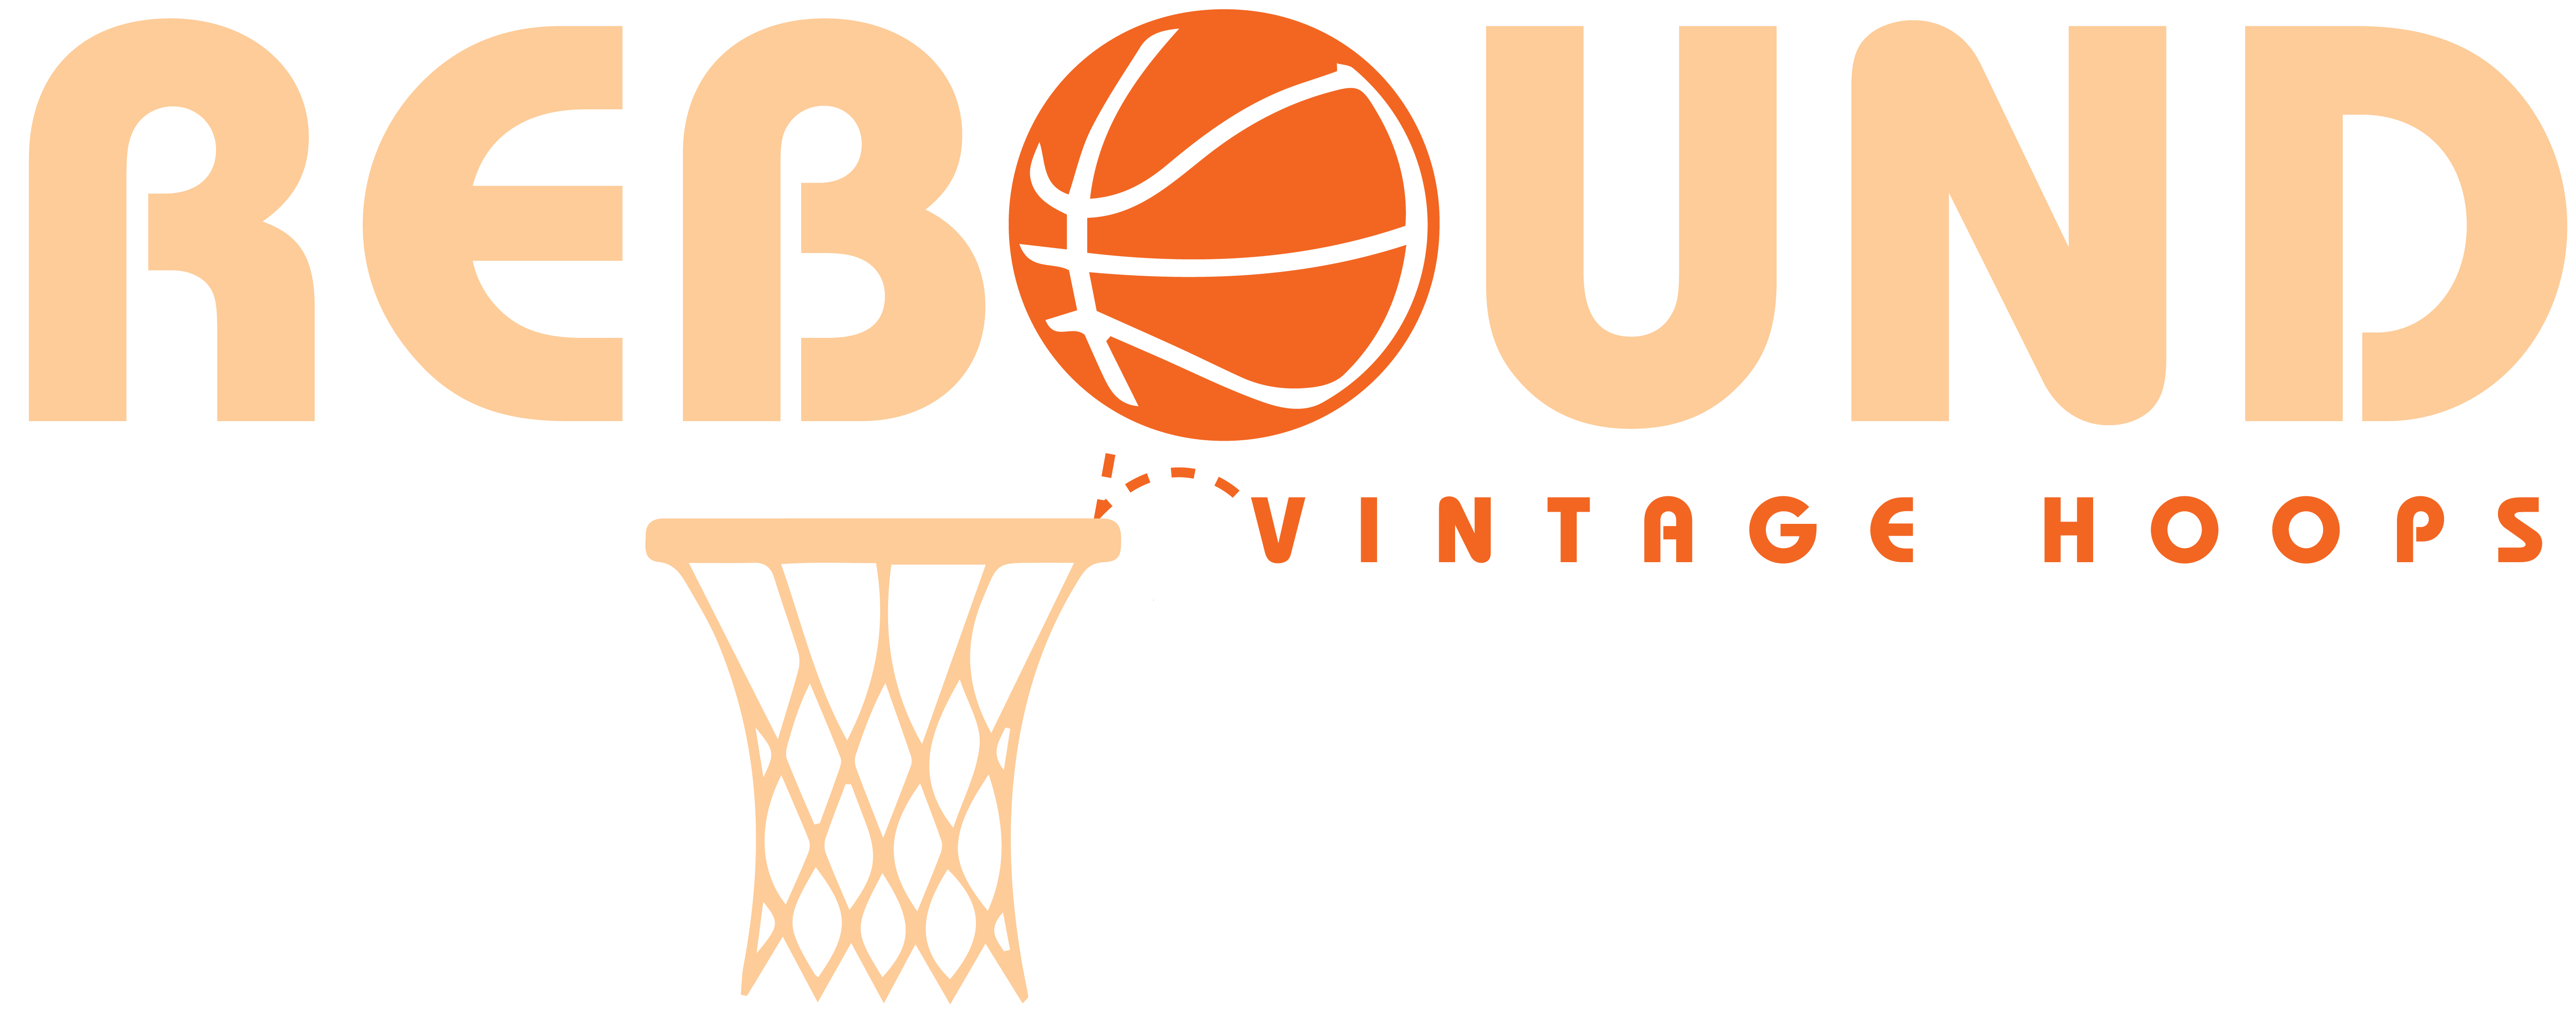 Louisville Catbirds Hoodie – Rebound Vintage Hoops